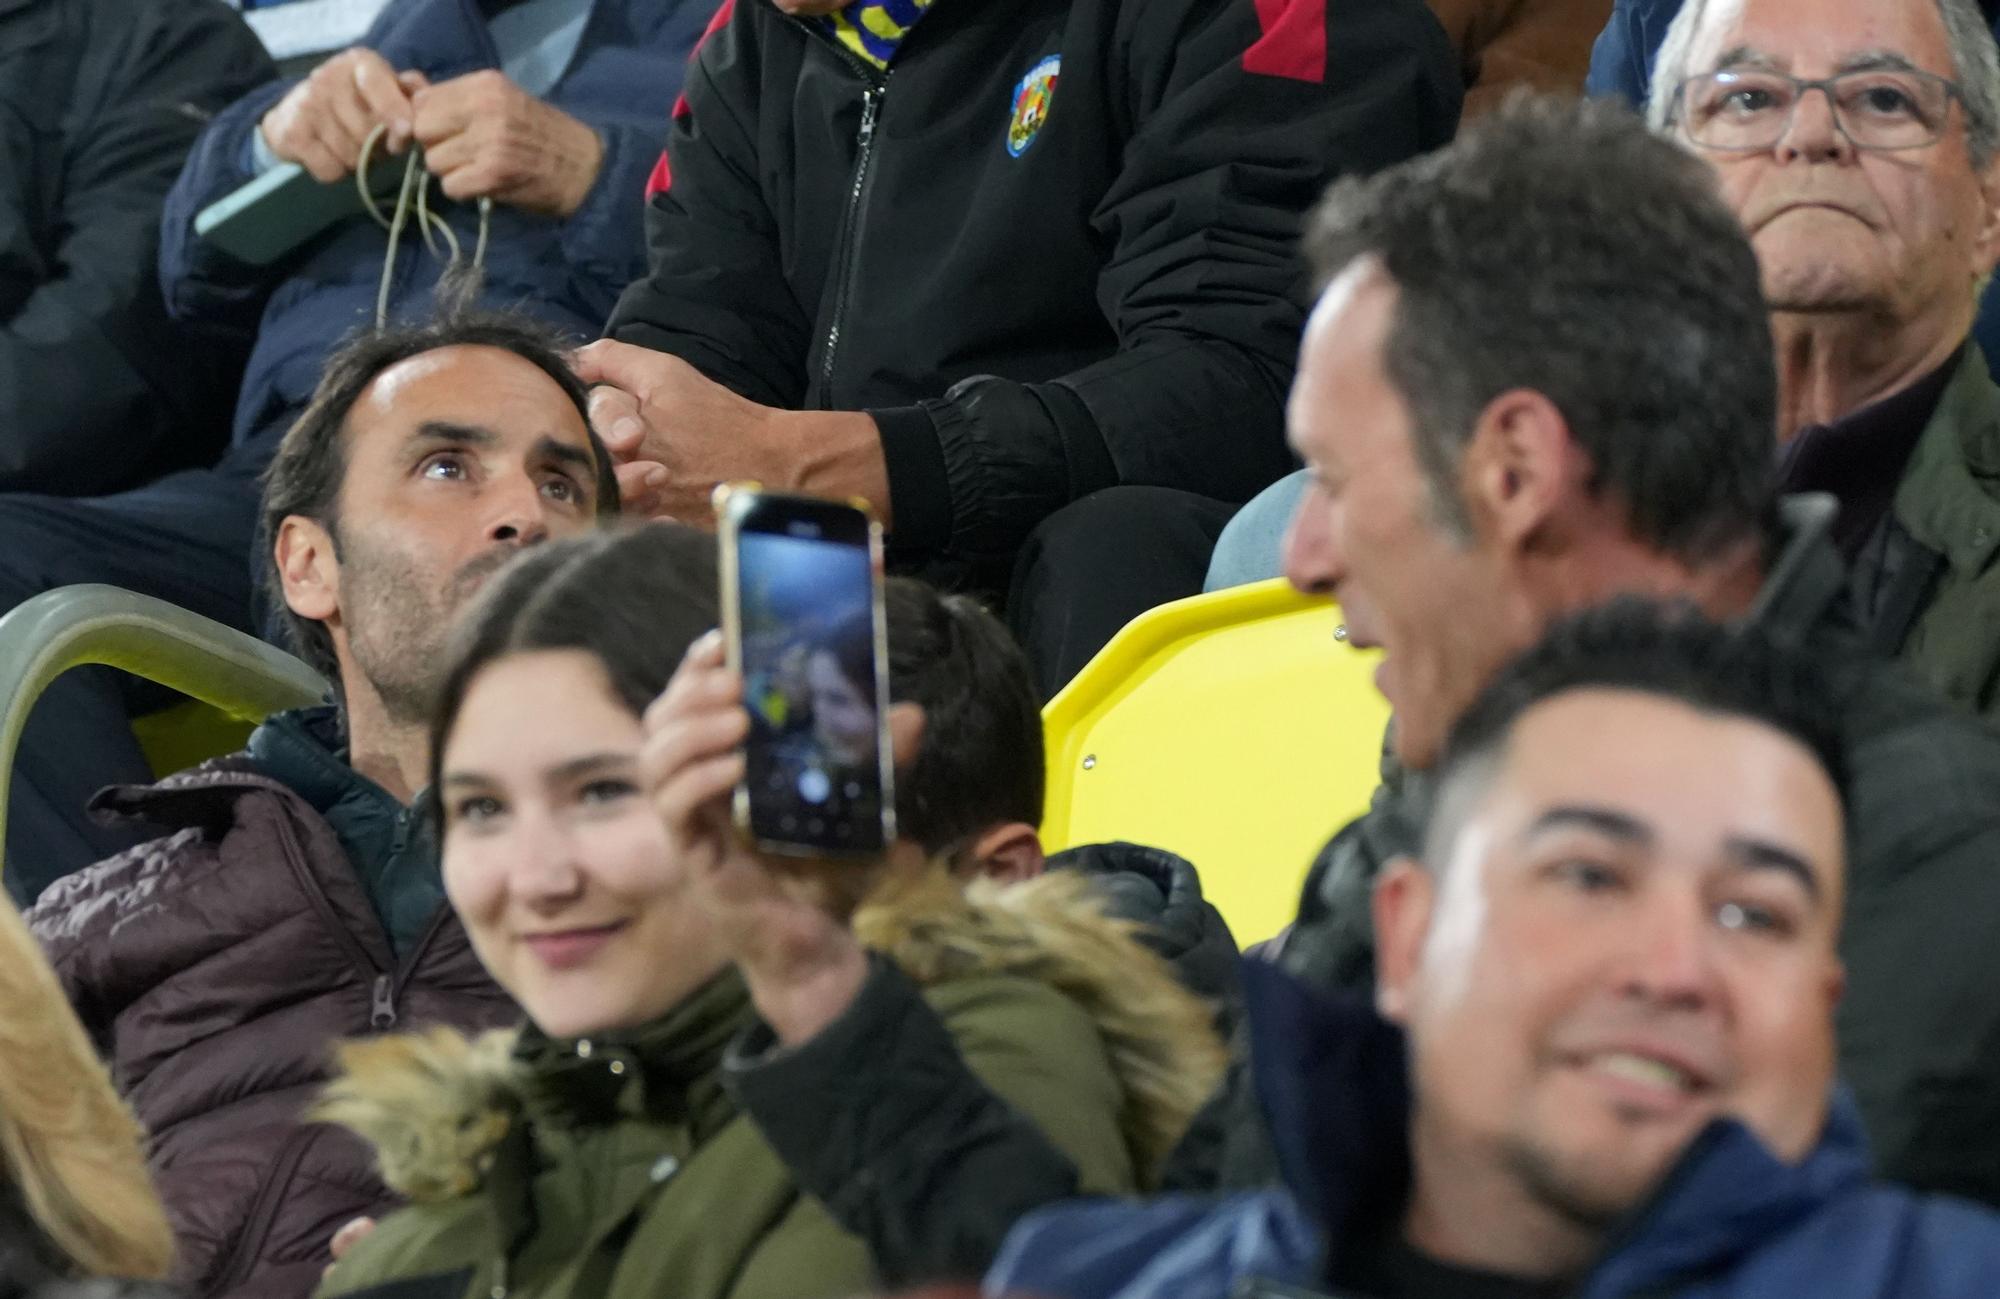 Las mejores imágenes del Villarreal-Anderlecht